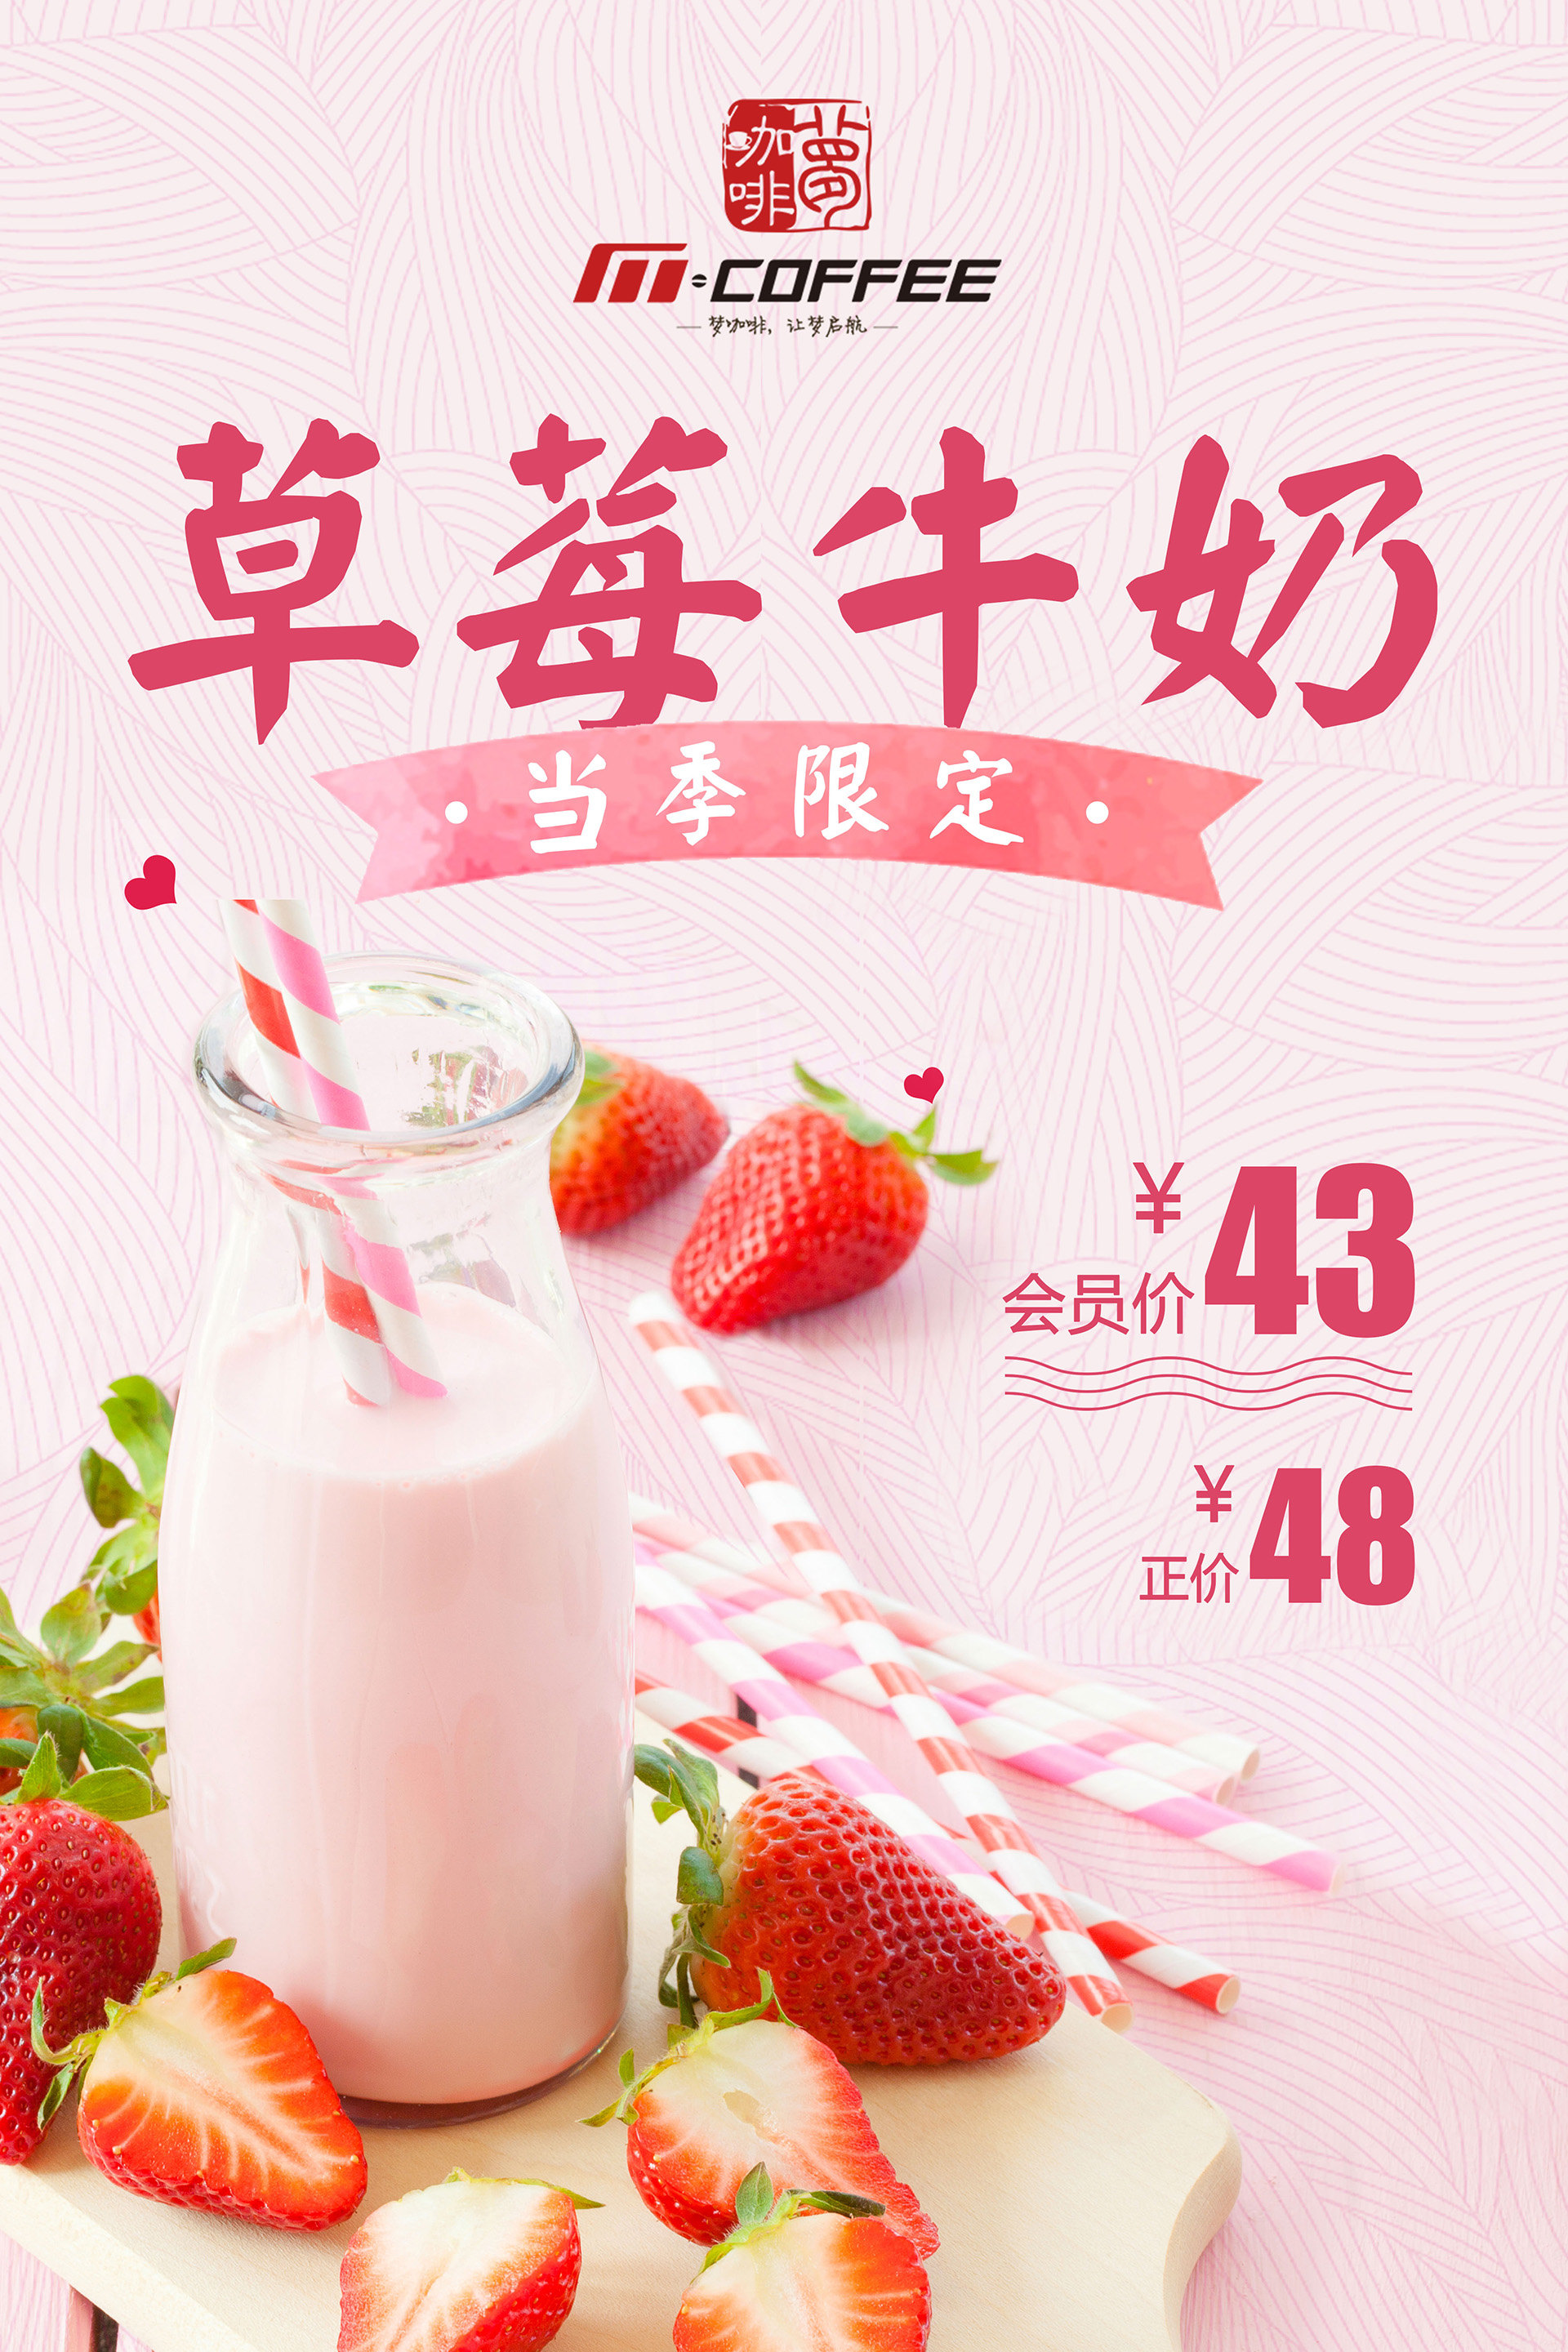 7.草莓牛奶 A3